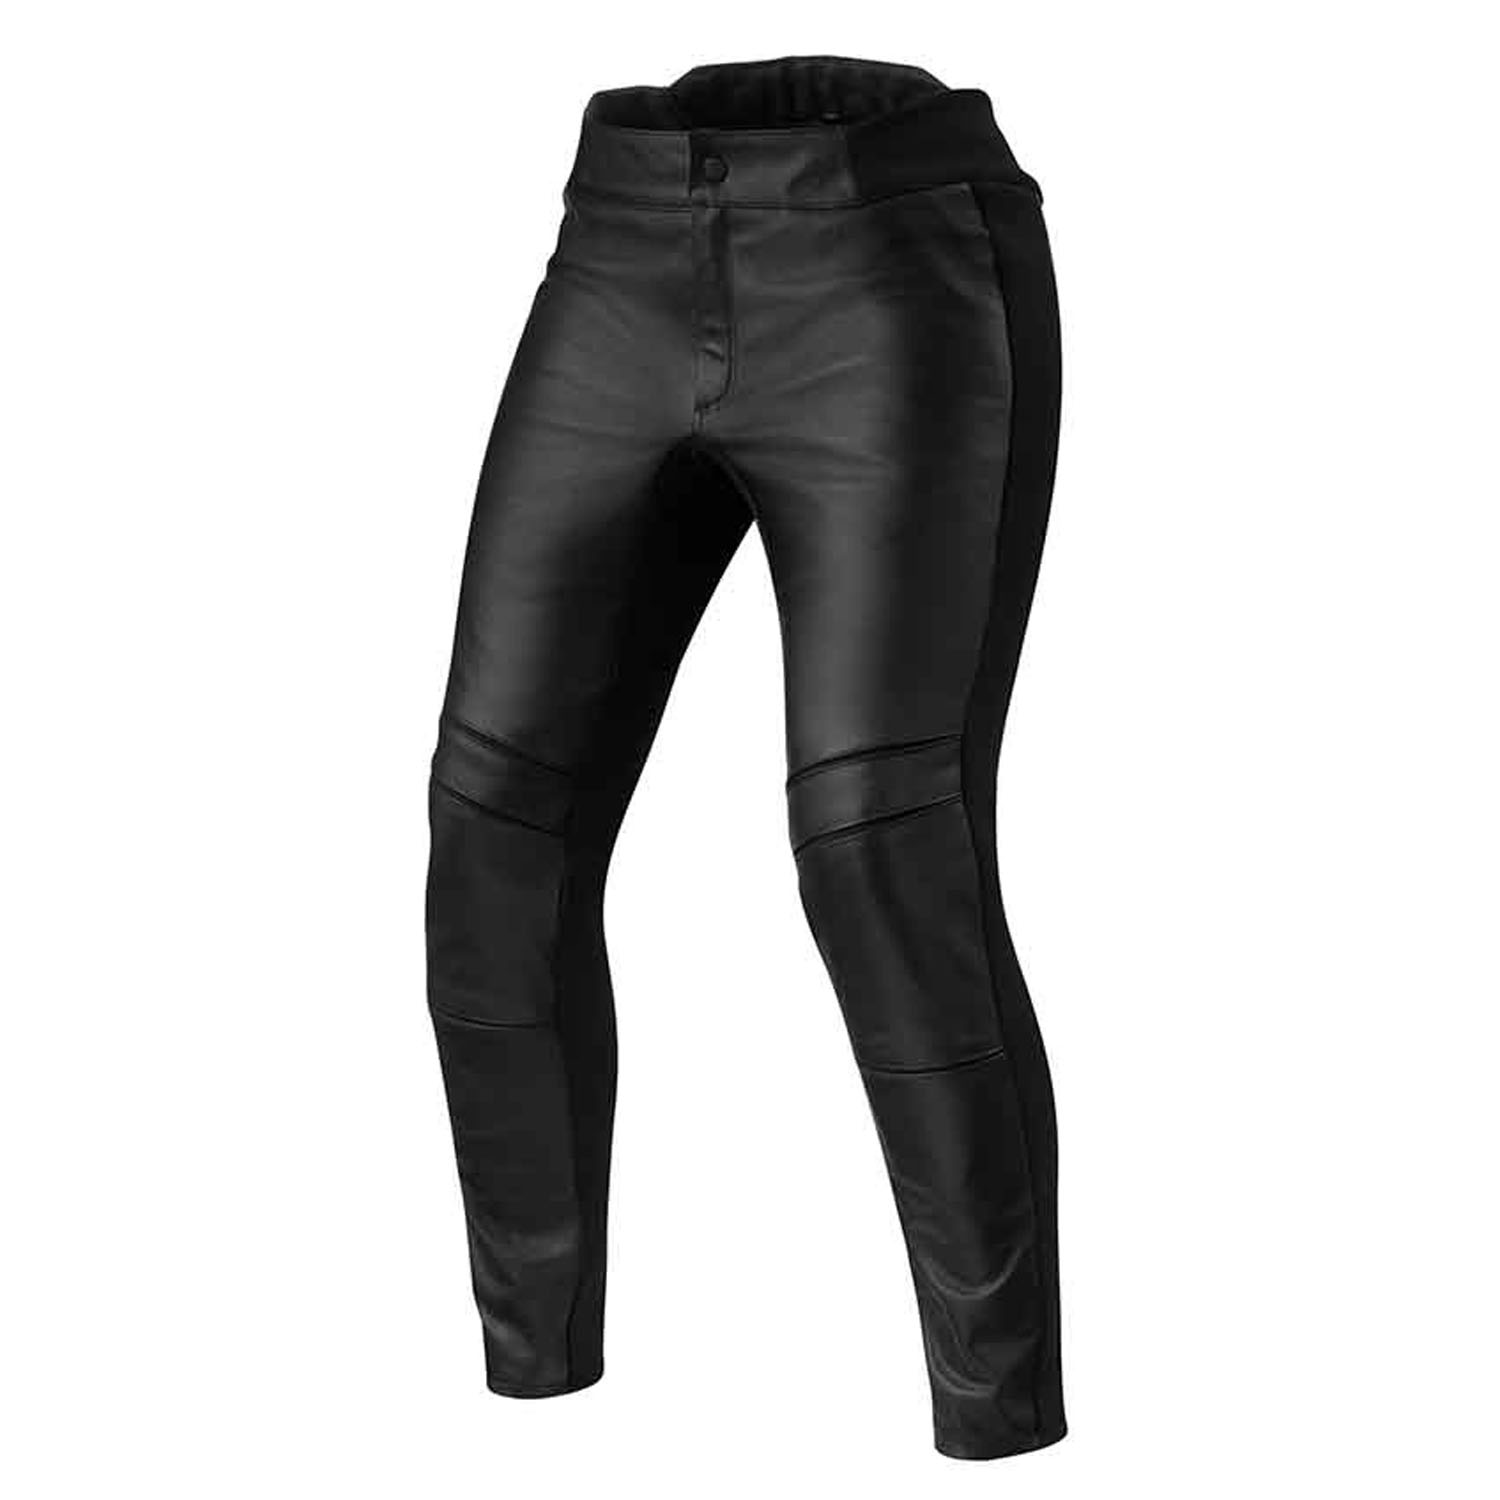 Image of REV'IT! Maci Ladies Black Standard Motorcycle Pants Size 36 EN